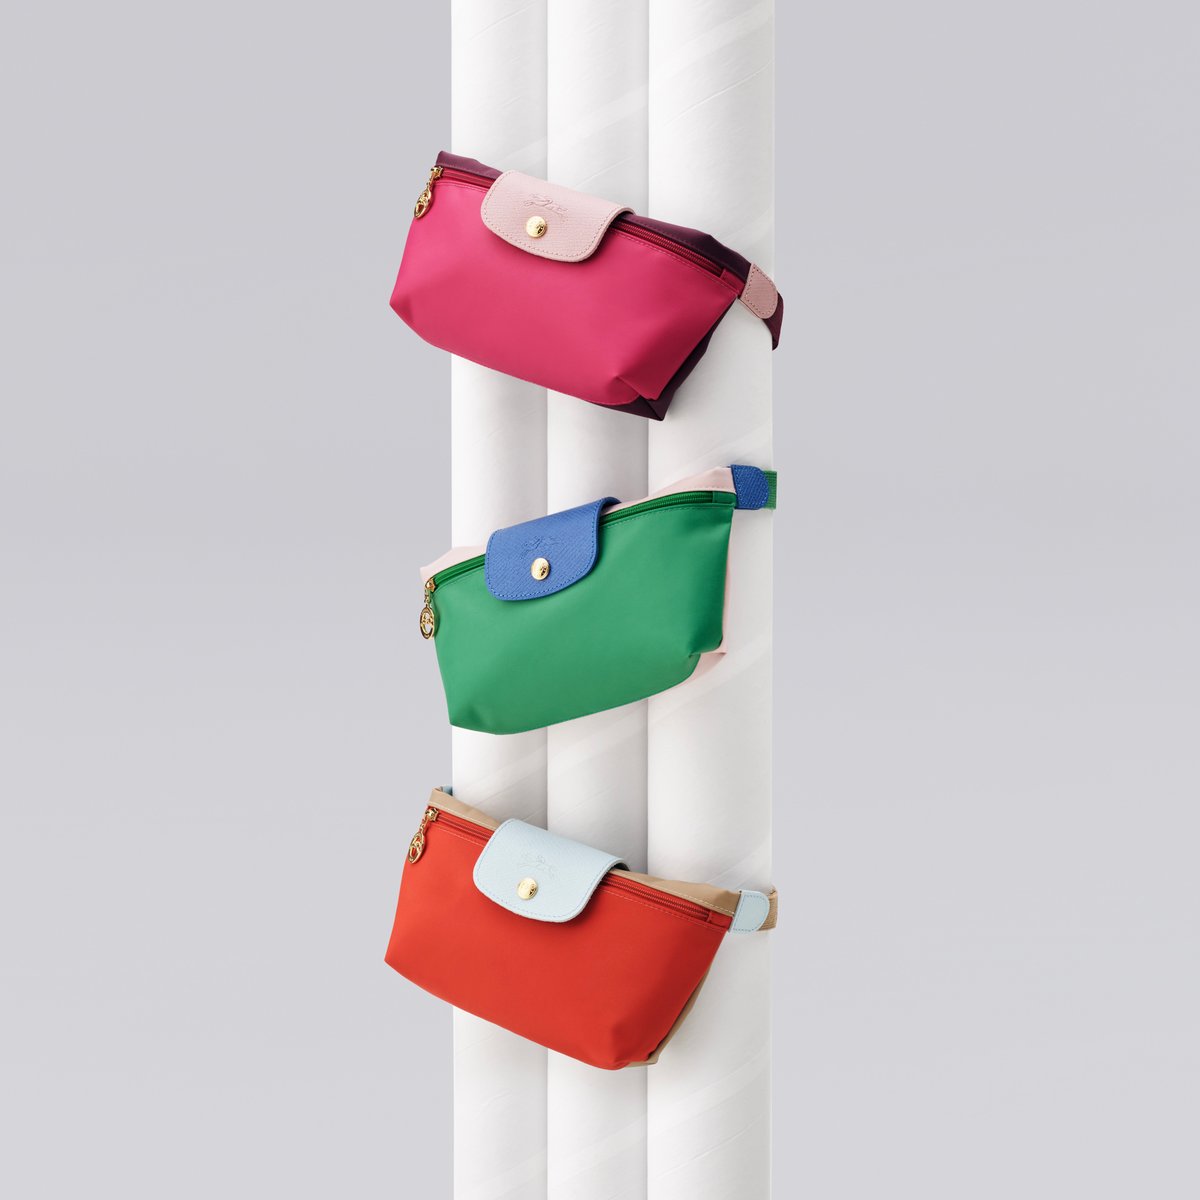 ロンシャンが新ライン「ル プリアージュ® リプレイ」を発表 定番アイテムの端材を活用したバッグを展開